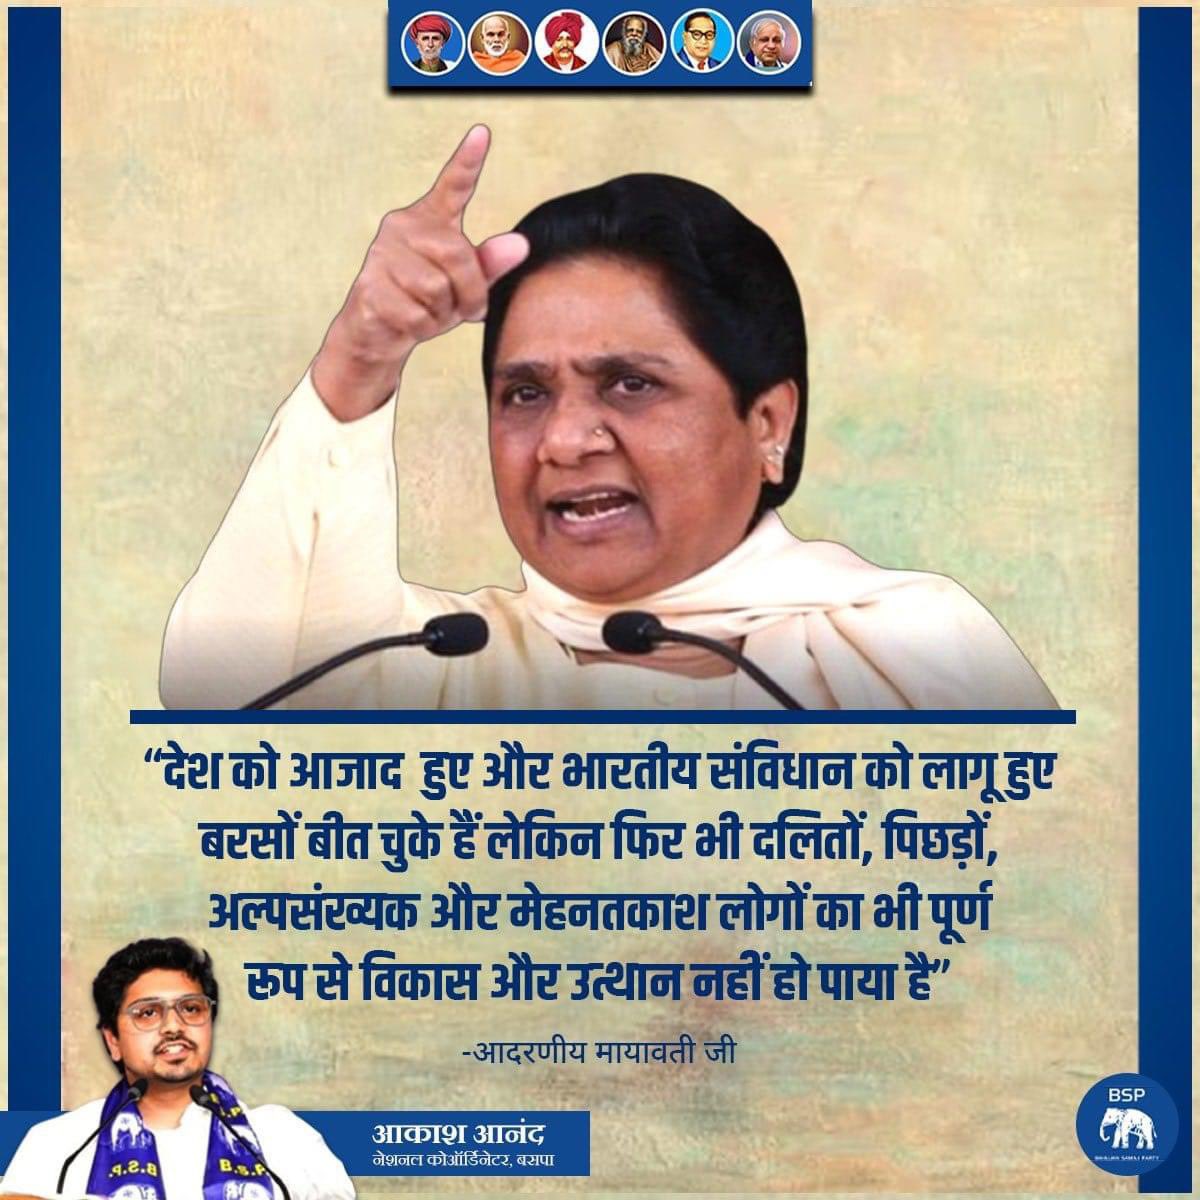 शिक्षा,स्वास्थ्य,सुरक्षा और रोज़गार #लोकतंत्र का मुख्य आधार है । देश की एकमात्र पार्टी बहुजन समाज पार्टी की उत्तर प्रदेश में बनी सरकार में इन्हें लागू करके सही मायने में सही लोकतंत्र स्थापित हो पाया था । केवल कहते ही नहीं बल्कि कर के दिखाते हैं । @Mayawati @AnandAkash_BSP